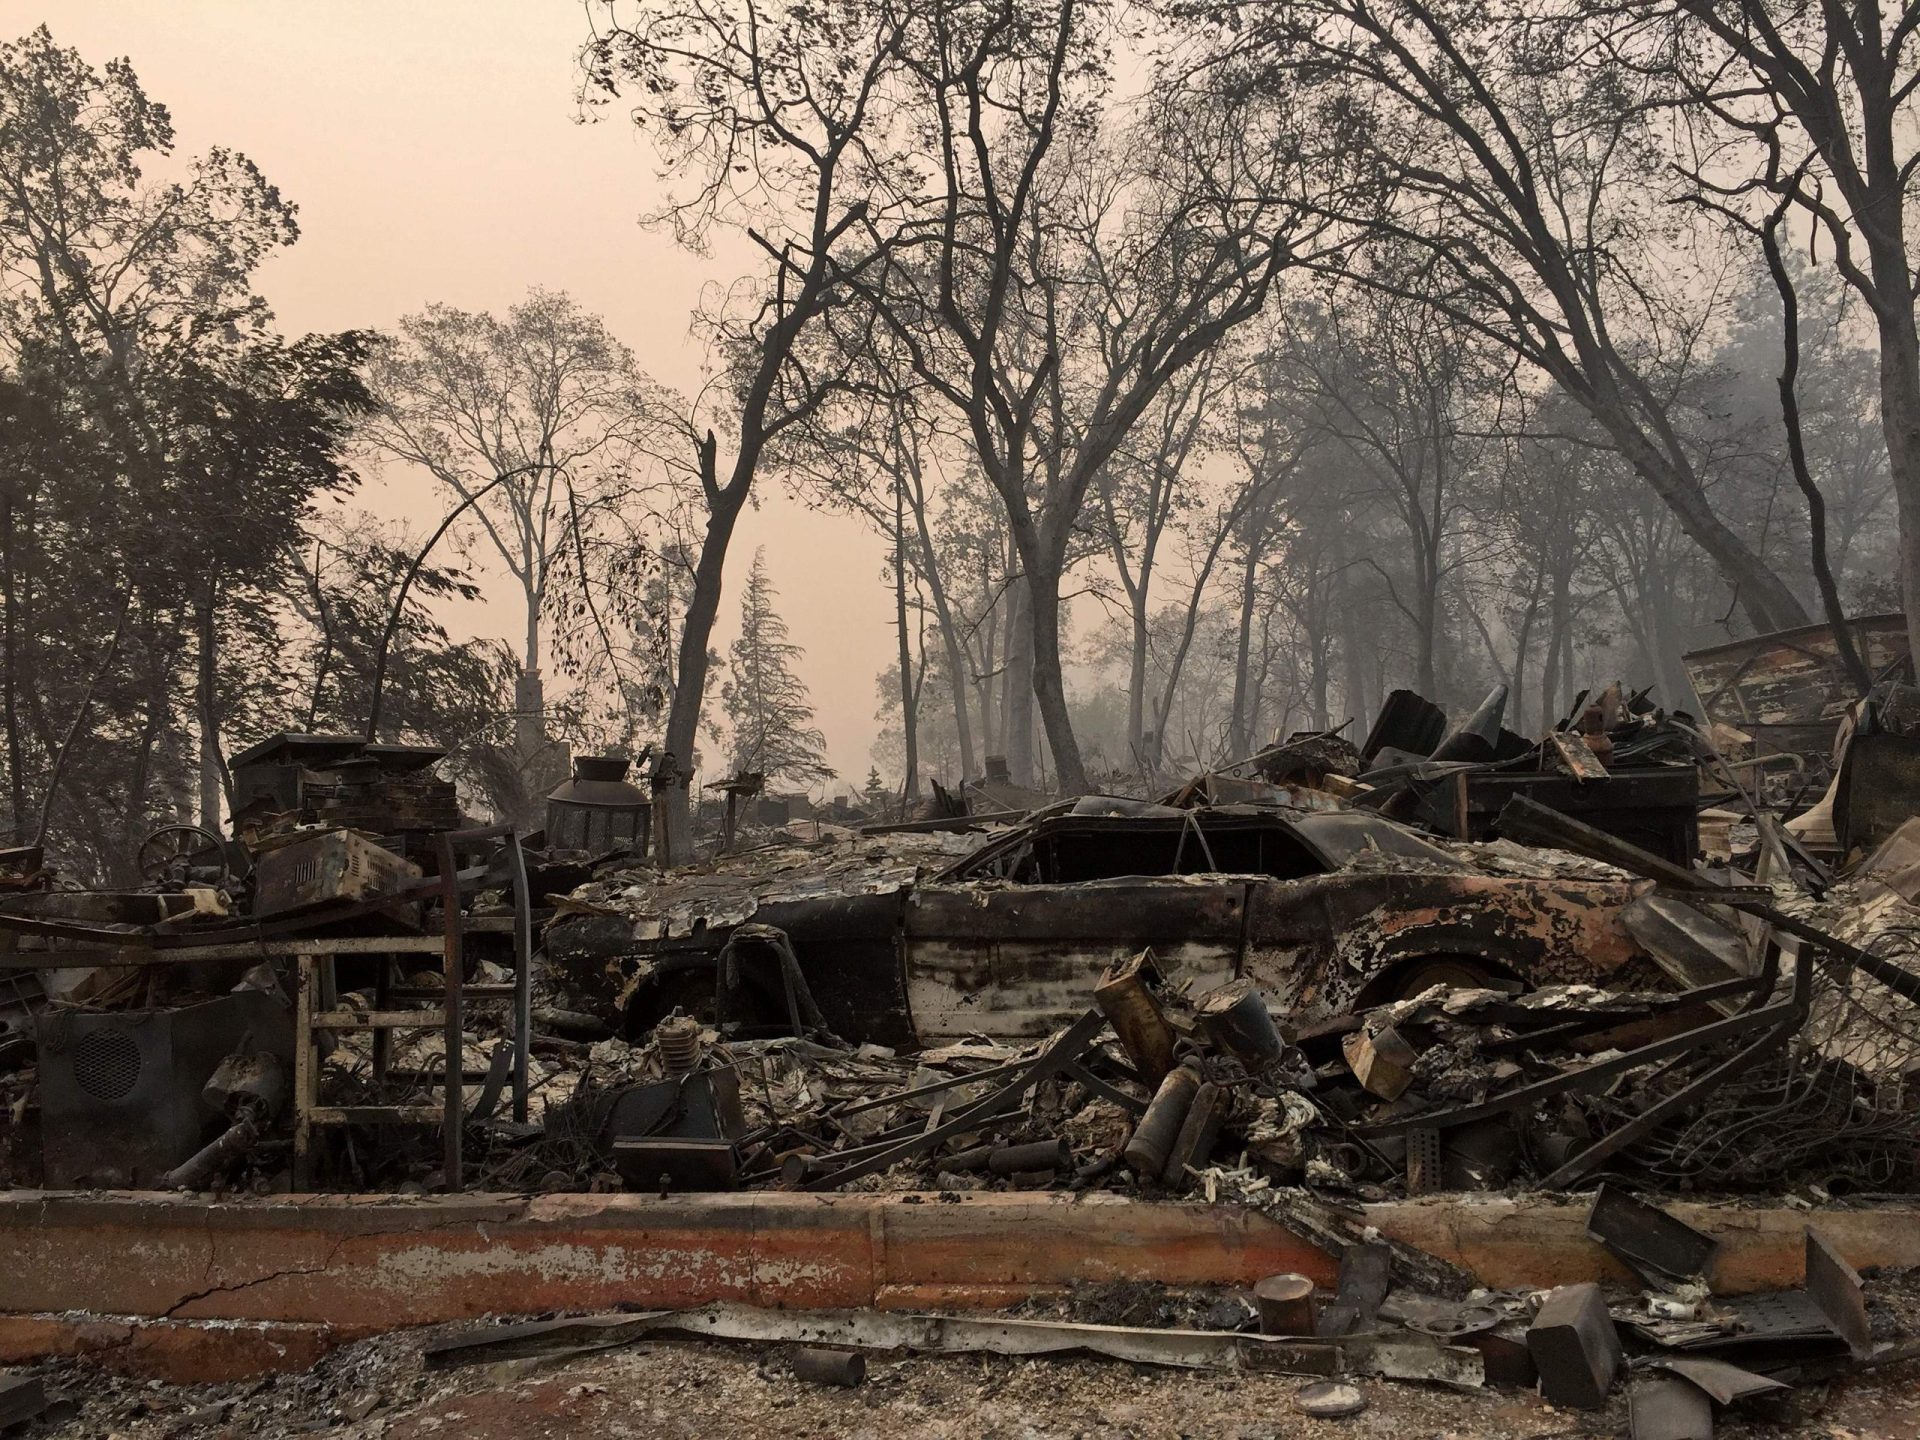 Último balanço dá conta de 63 vítimas mortais e 631 desaparecidos em incêndio em Paradise na Califórnia